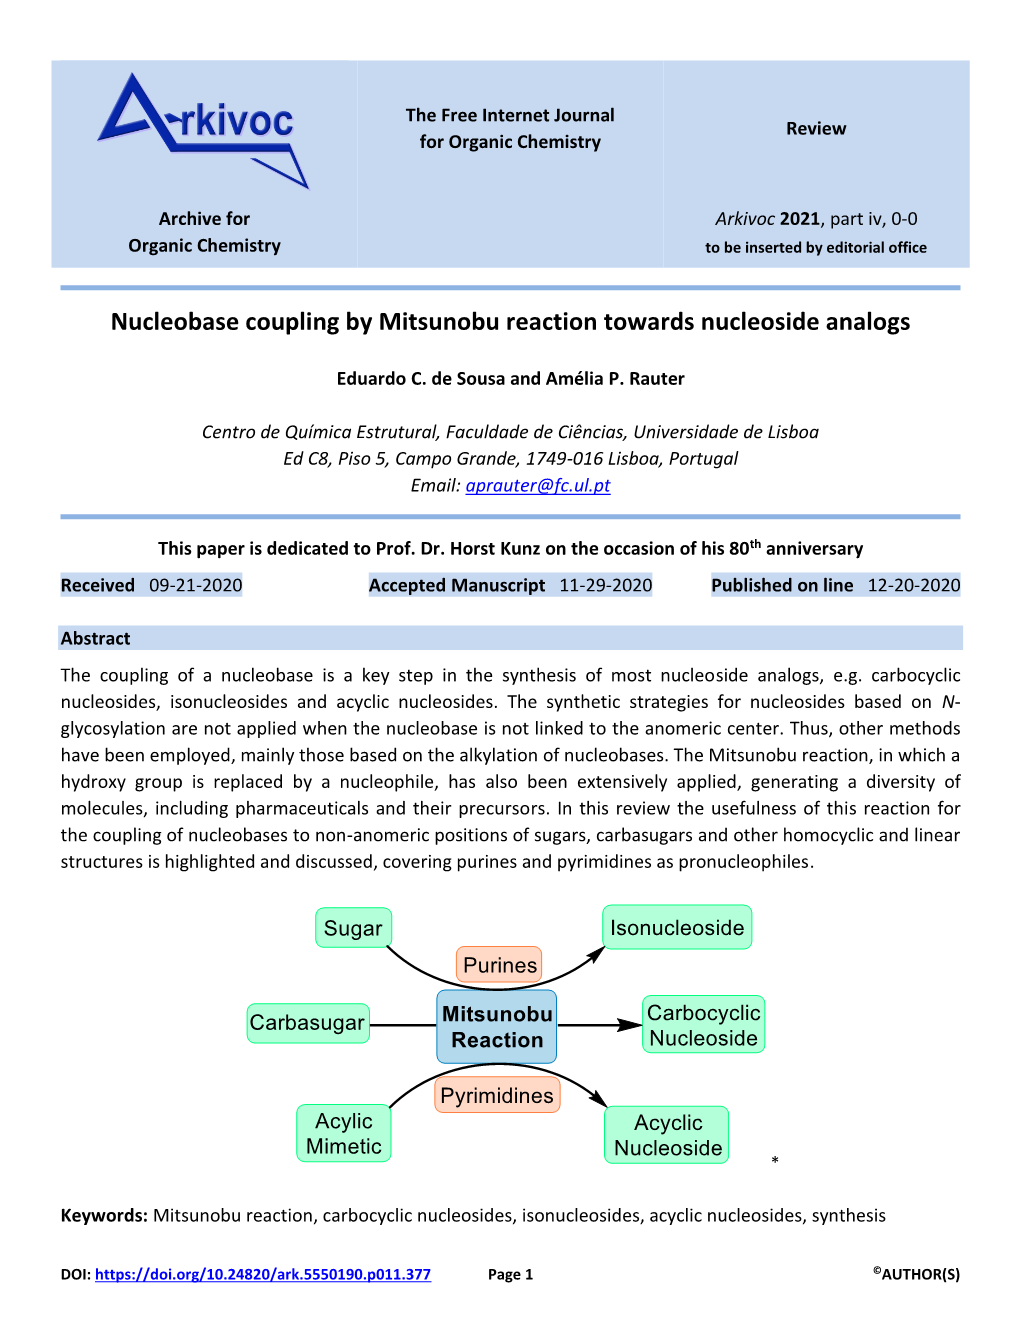 Nucleobase Coupling by Mitsunobu Reaction Towards Nucleoside Analogs